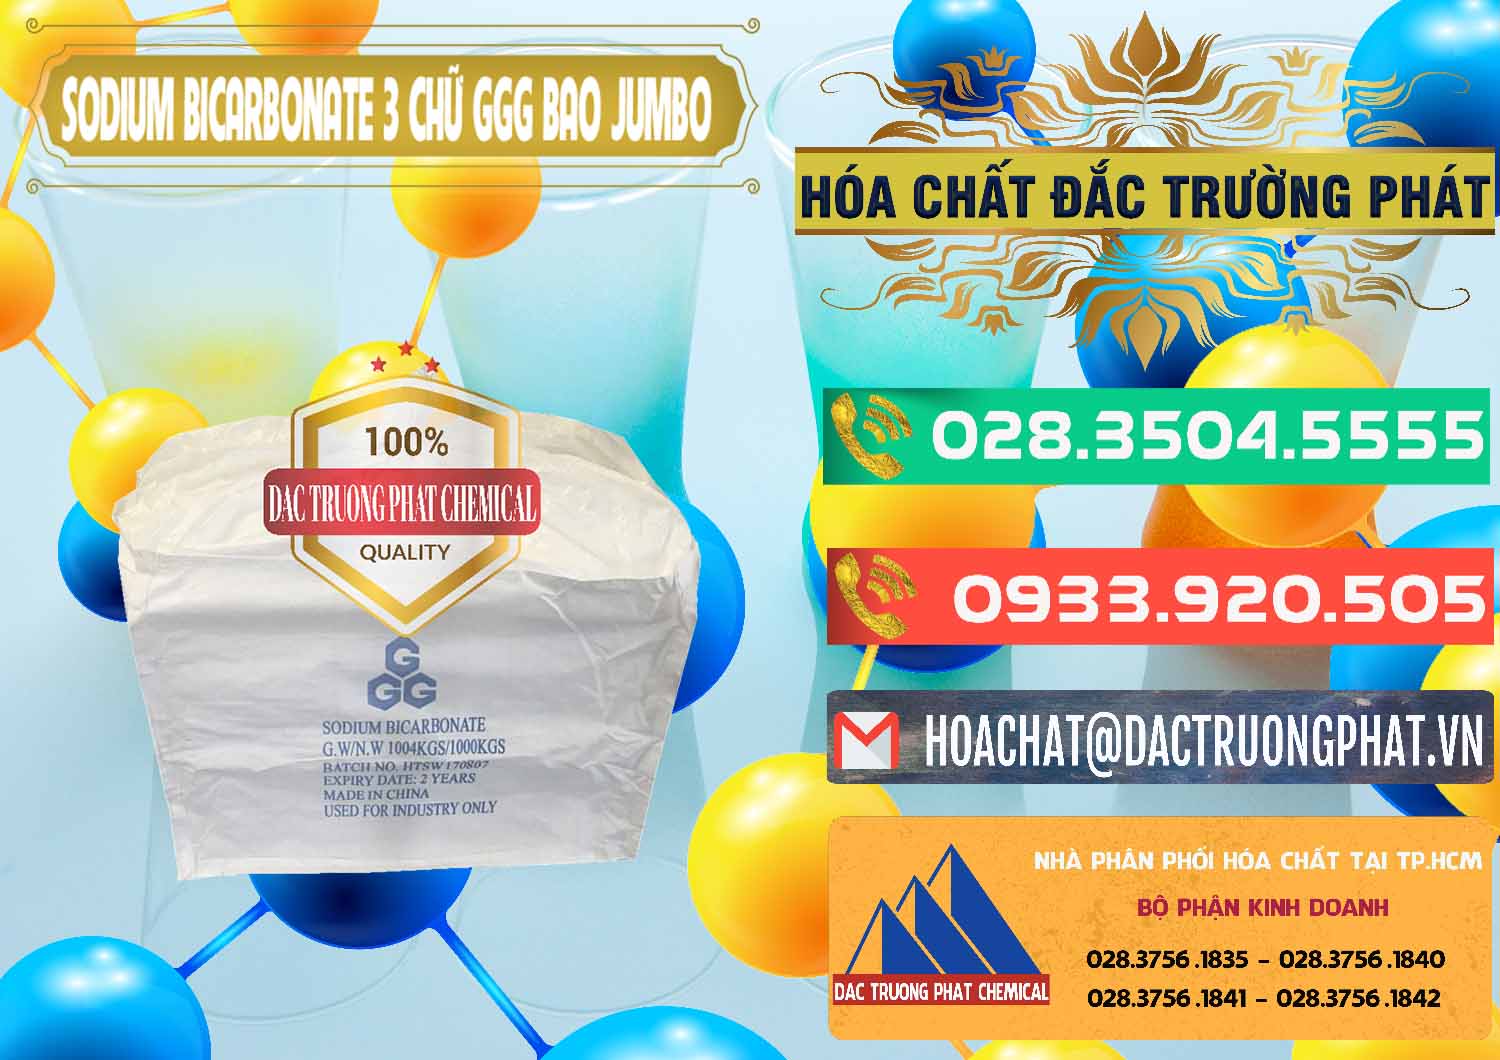 Nơi bán - cung cấp Sodium Bicarbonate – Bicar NaHCO3 Food Grade 3 Chữ GGG Bao Jumbo ( Bành ) Trung Quốc China - 0260 - Đơn vị chuyên phân phối - bán hóa chất tại TP.HCM - congtyhoachat.com.vn